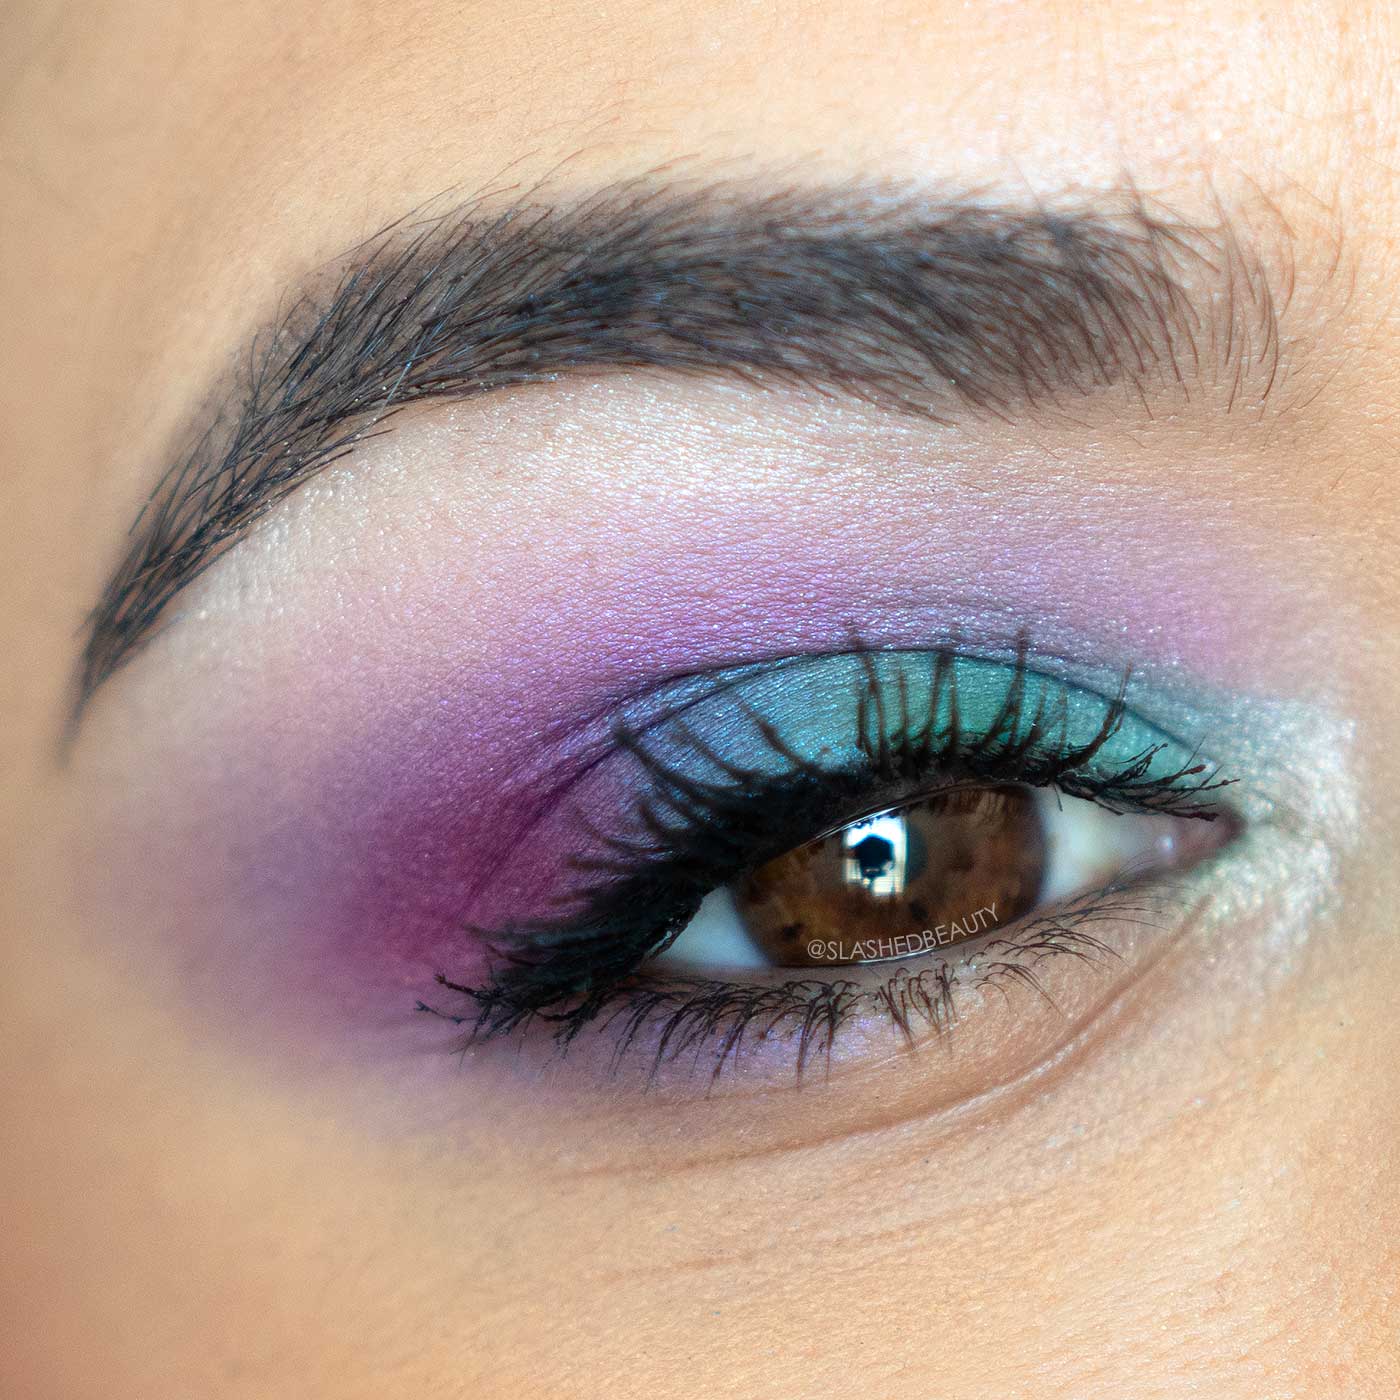 Makeup Look using Kokie Cosmetics Arabian Nights Eyeshadow Palette Review & Swatches | Best Drugstore Eyeshadow Palette 2020 | Slashed Beauty